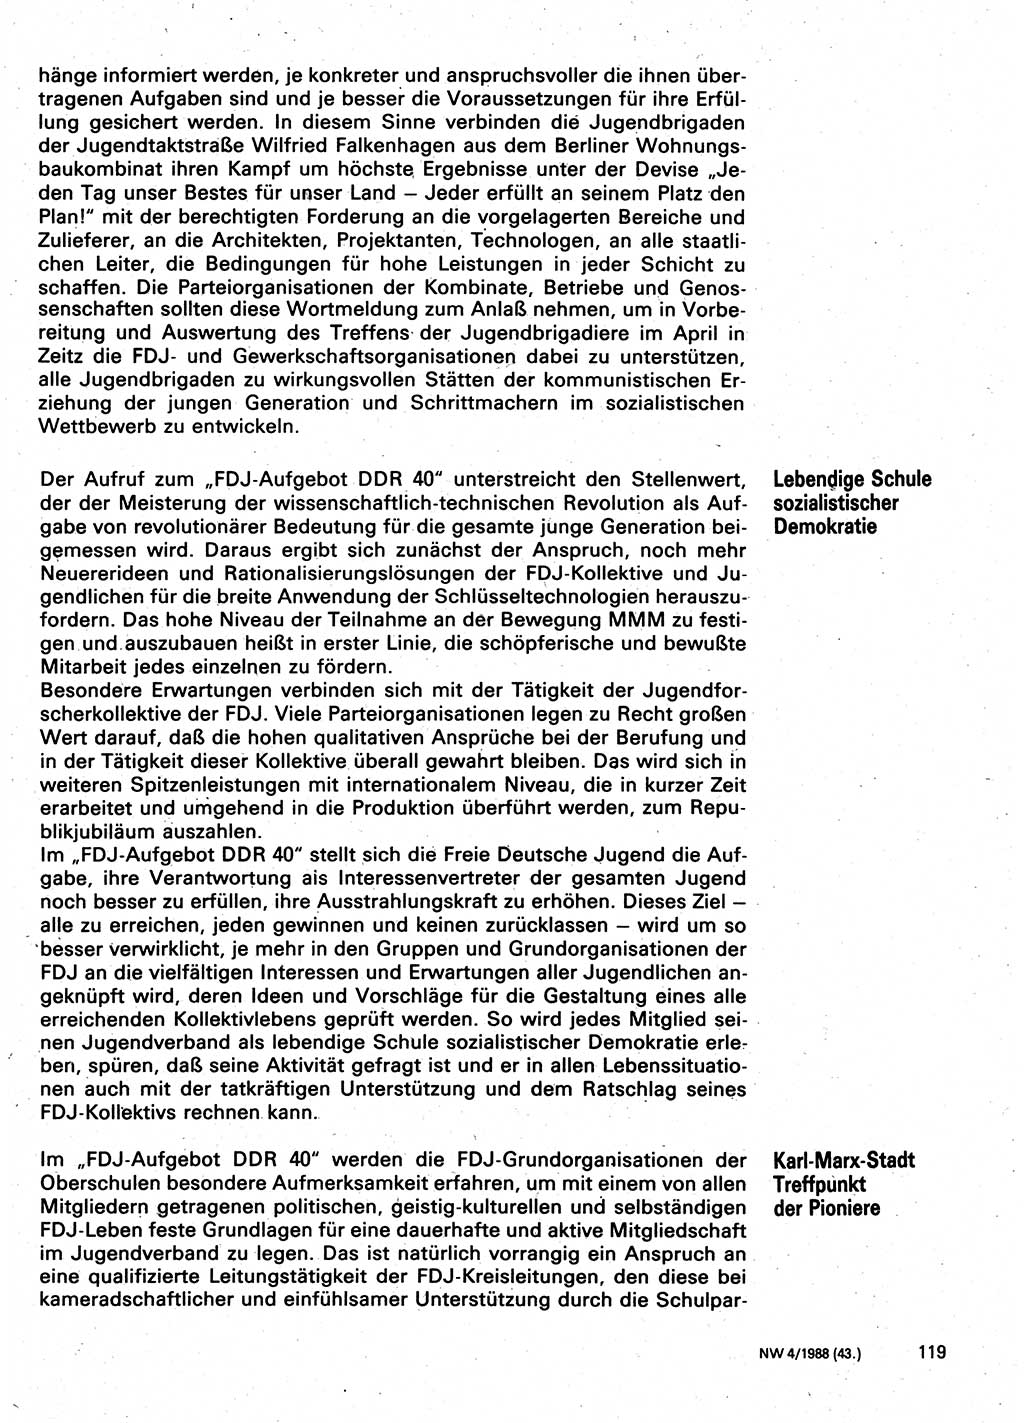 Neuer Weg (NW), Organ des Zentralkomitees (ZK) der SED (Sozialistische Einheitspartei Deutschlands) für Fragen des Parteilebens, 43. Jahrgang [Deutsche Demokratische Republik (DDR)] 1988, Seite 119 (NW ZK SED DDR 1988, S. 119)